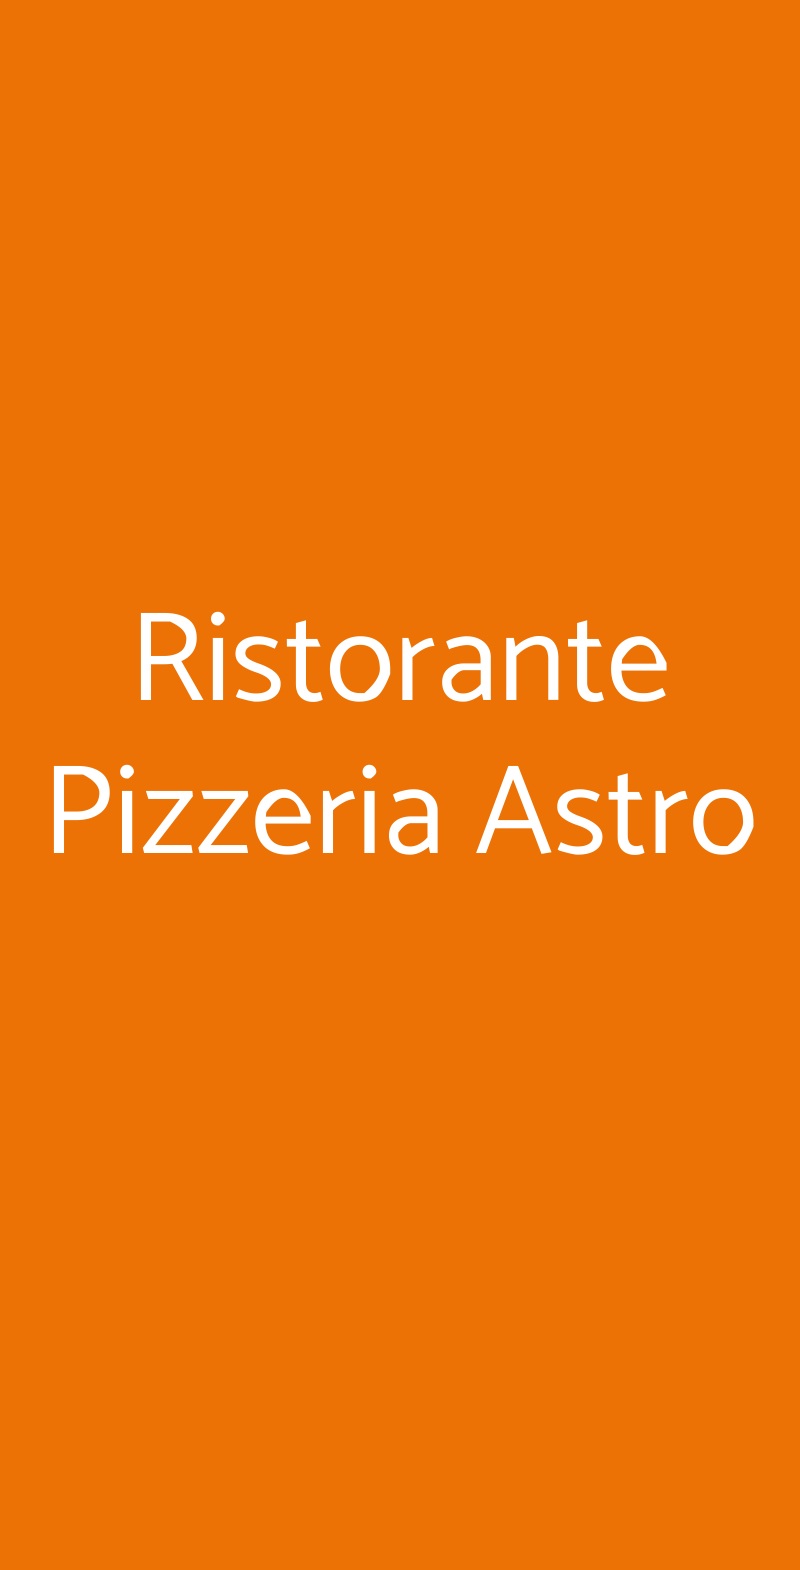 Ristorante Pizzeria Astro Caorle menù 1 pagina